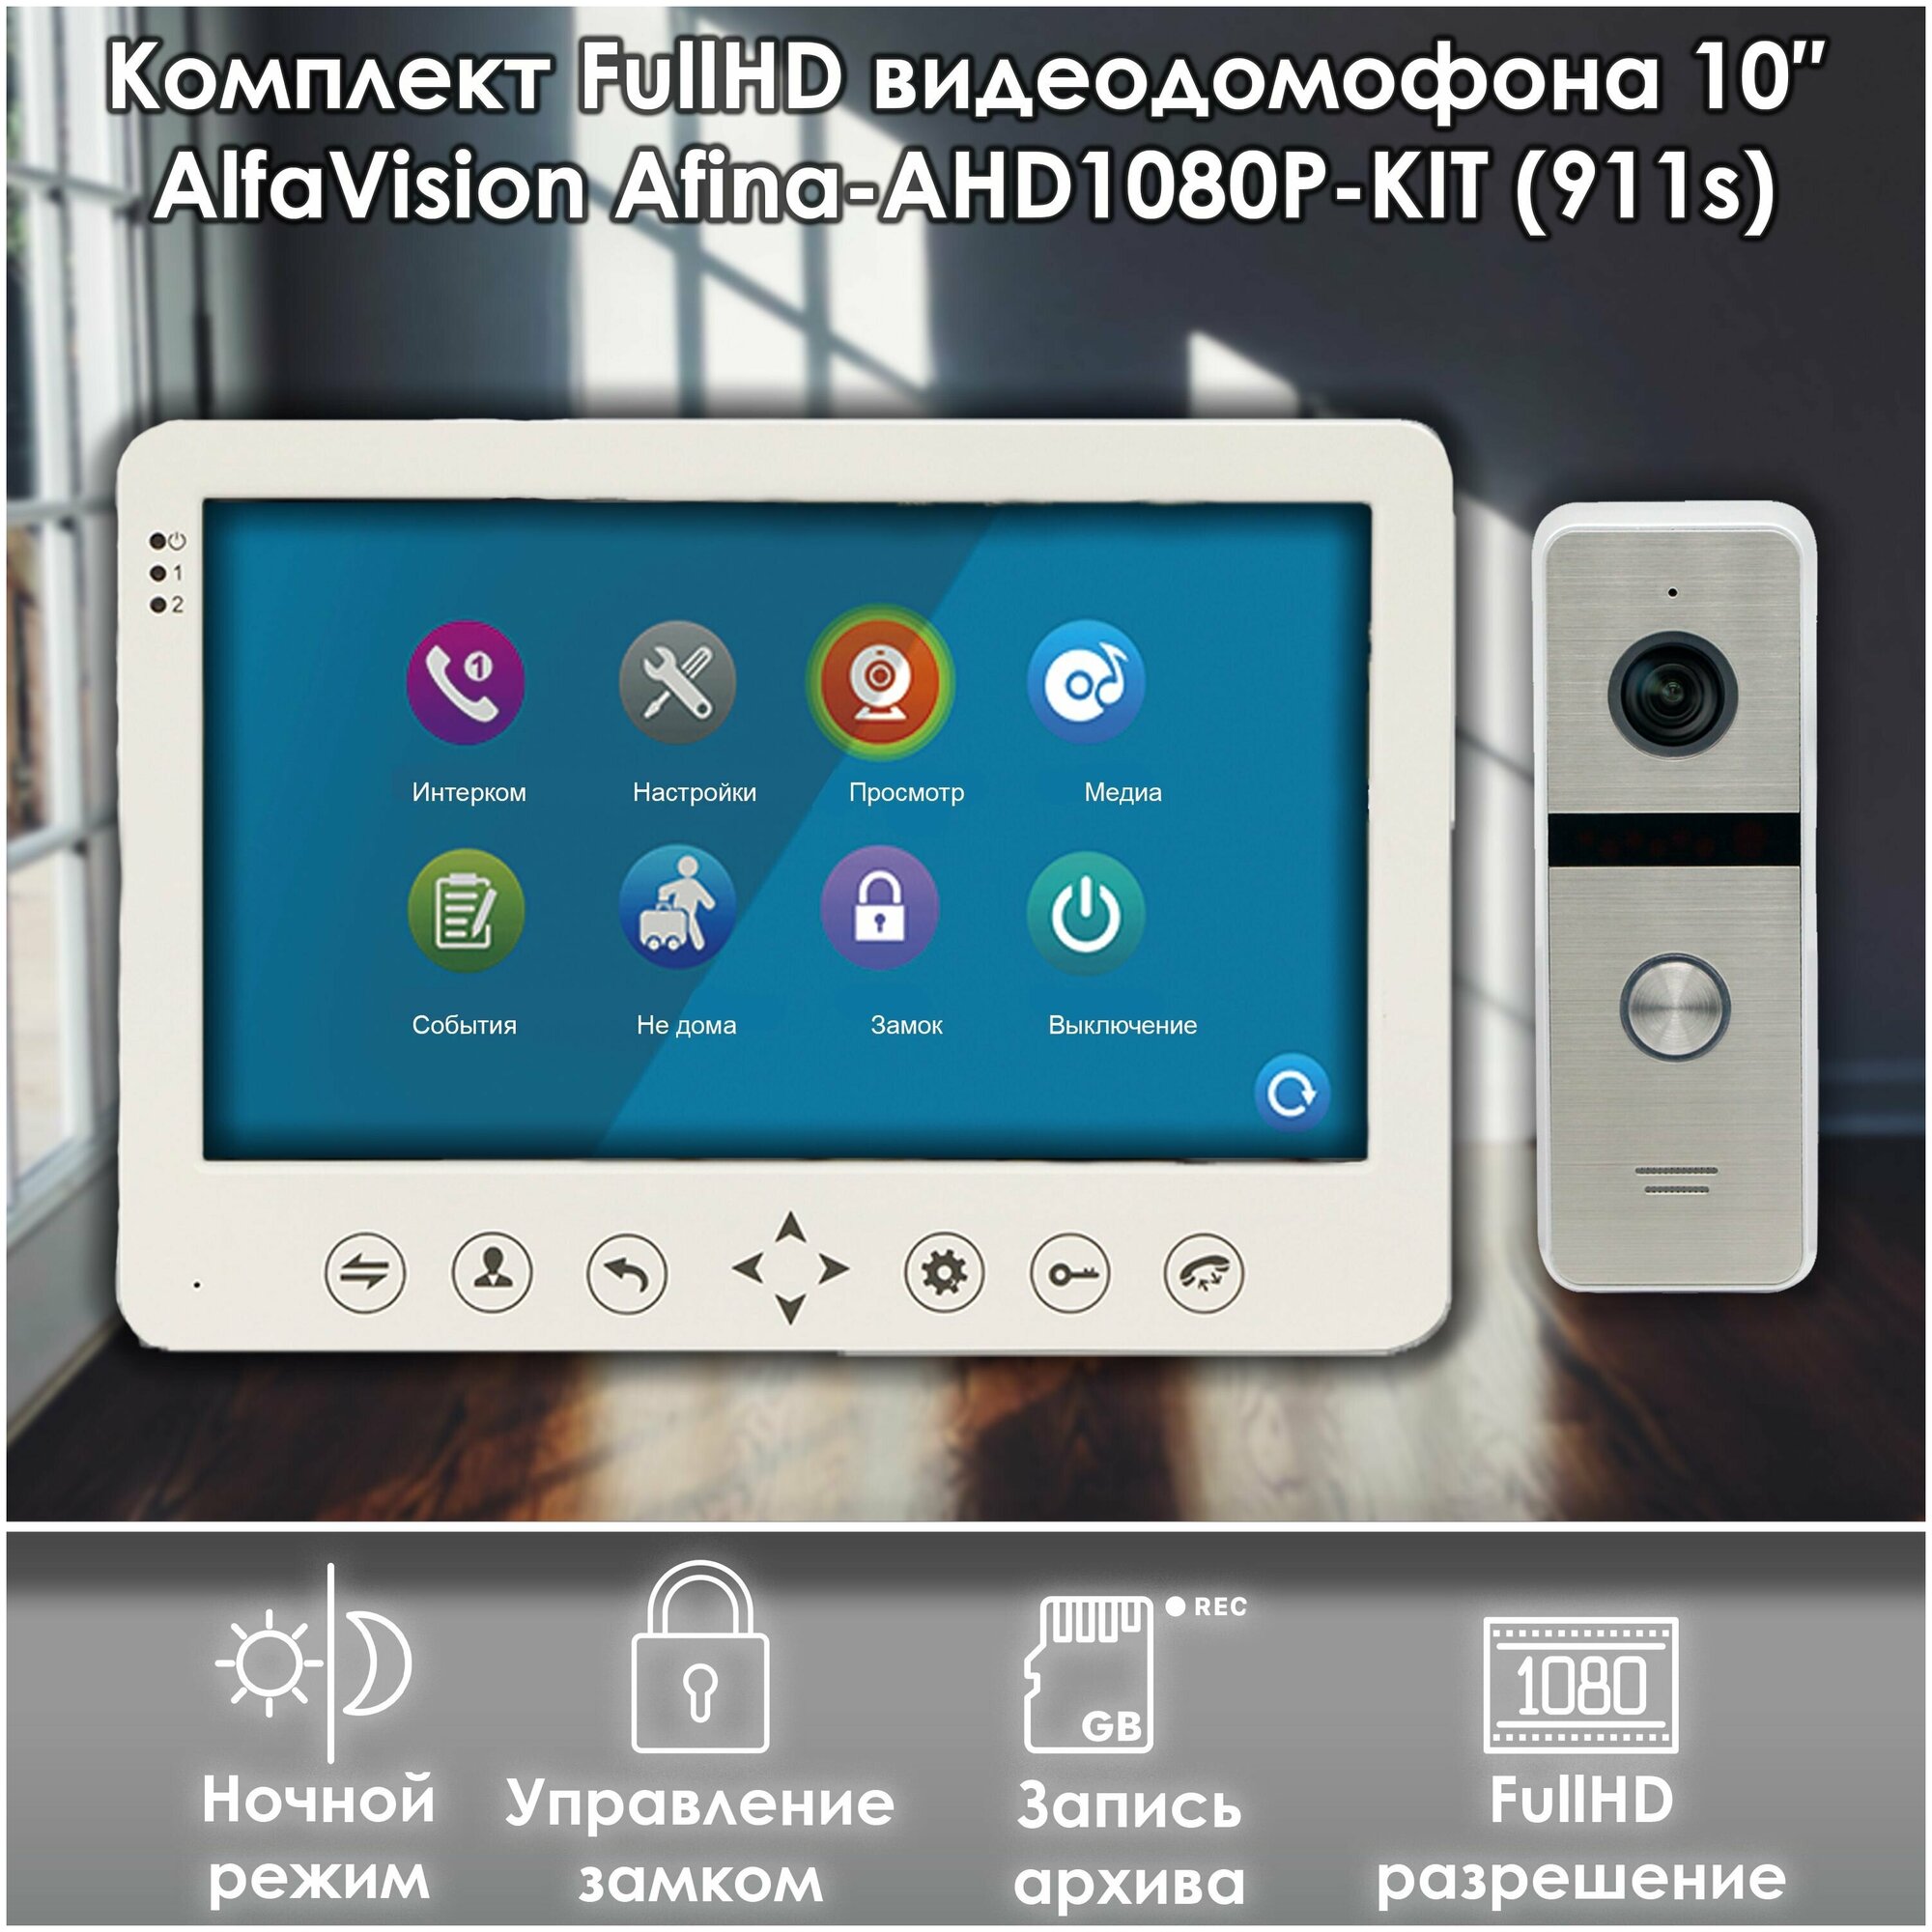 Комплект видеодомофона AFINA-AHD1080P-KIT+вызывная панель(911sl) Full HD. Экран 10". Запись звонков и движения на SD-карту.